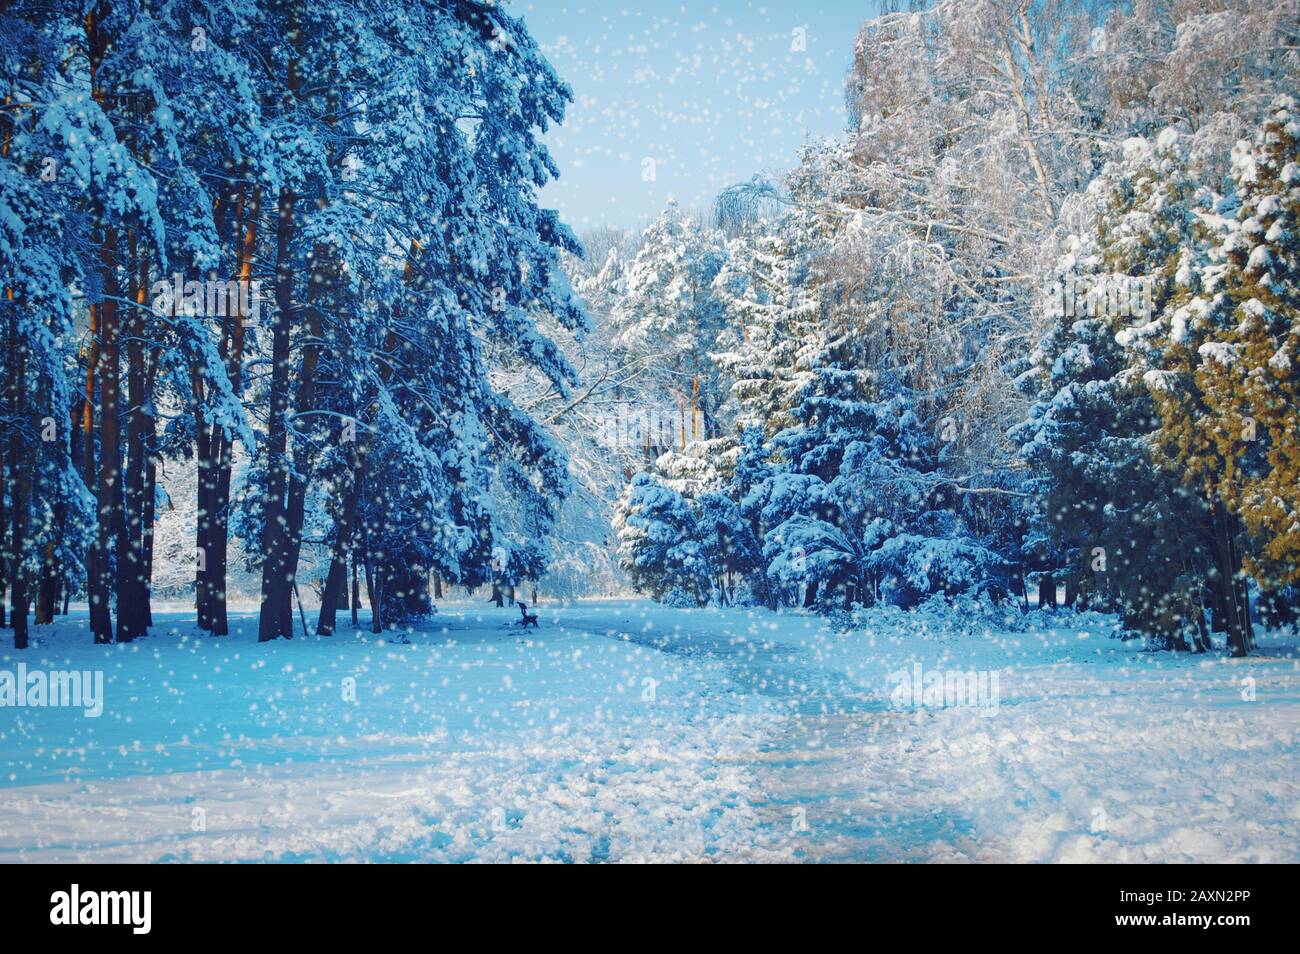 alberi alti e un sentiero nel parco con neve in caduta, colore blu Foto Stock